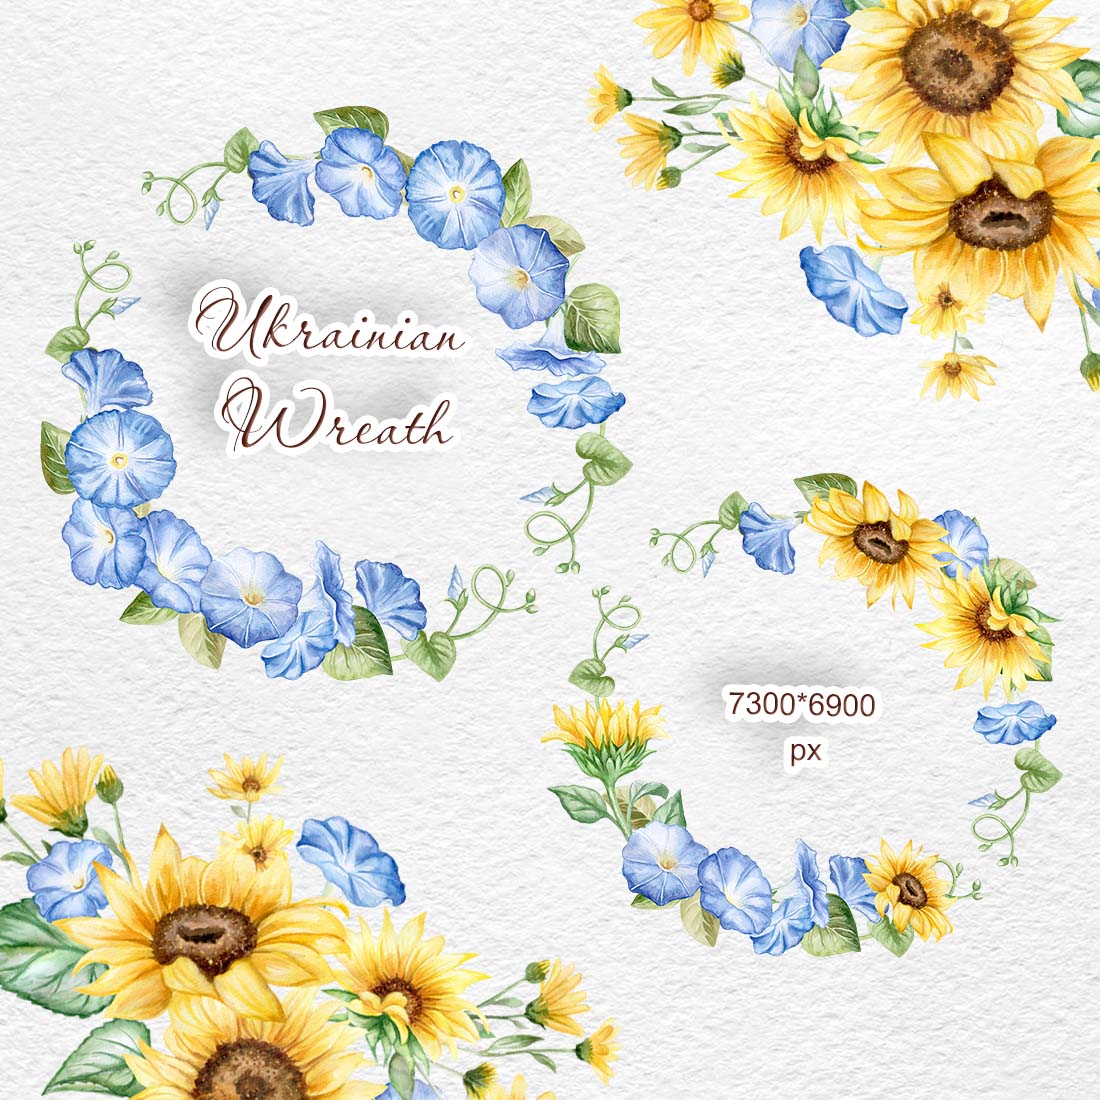 Ukraine Watercolor Flowers Clipart previews.